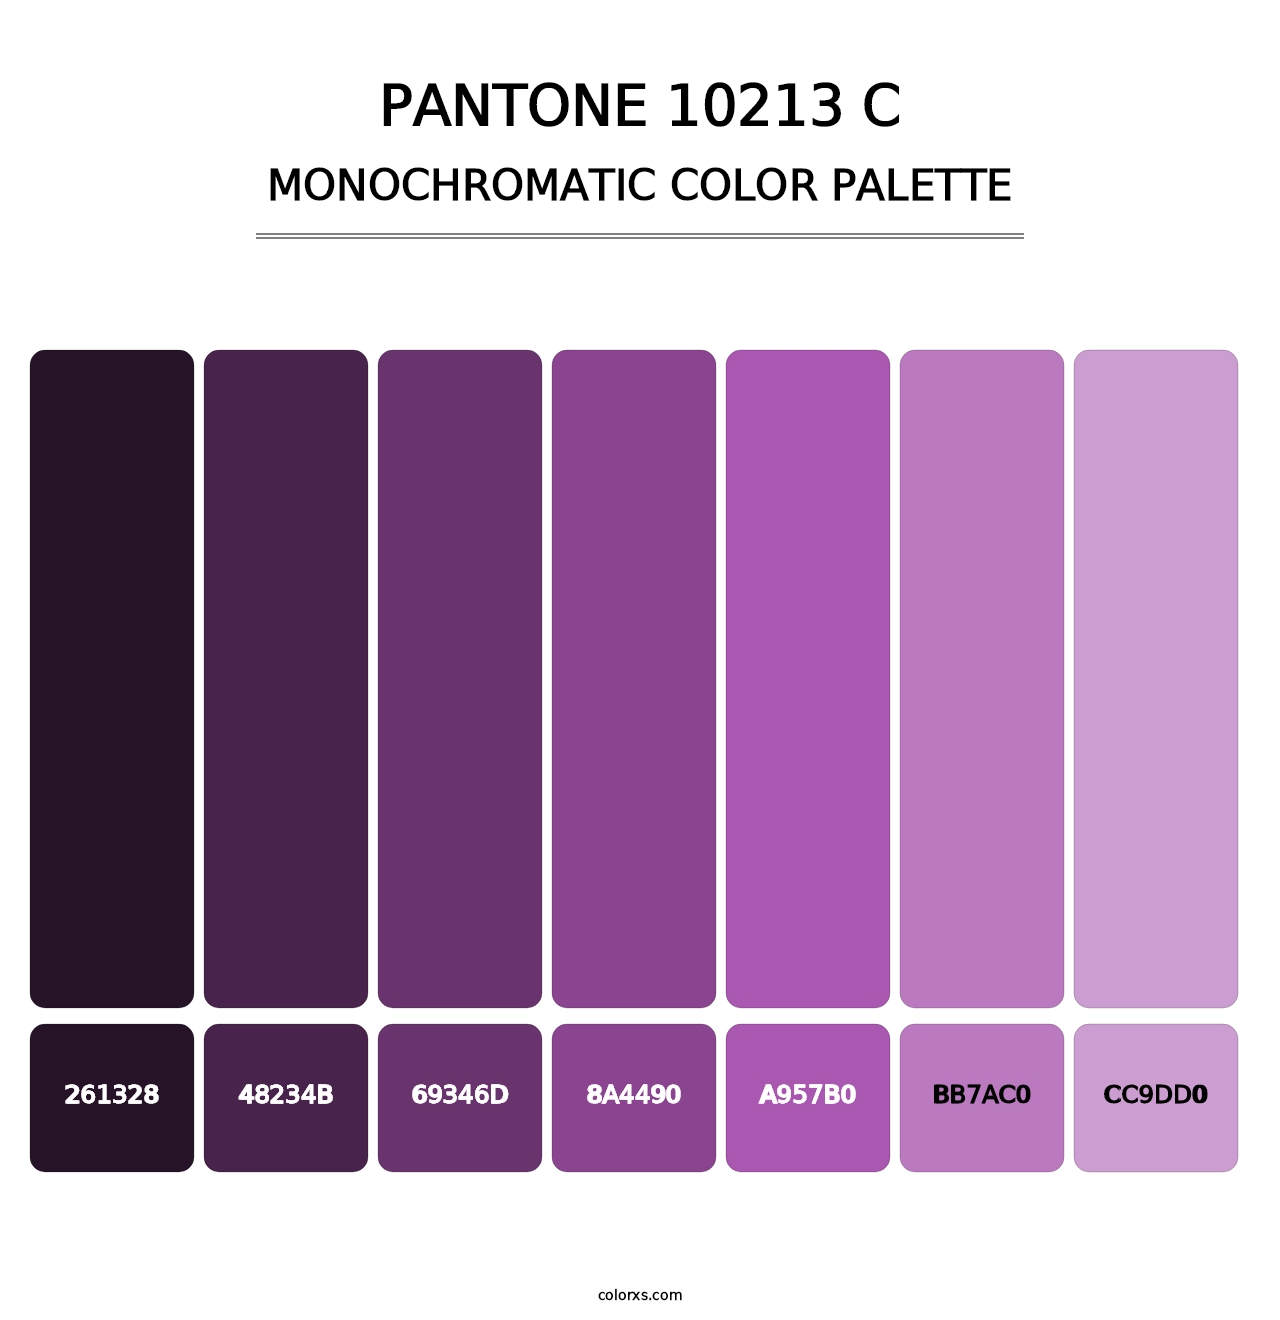 PANTONE 10213 C - Monochromatic Color Palette